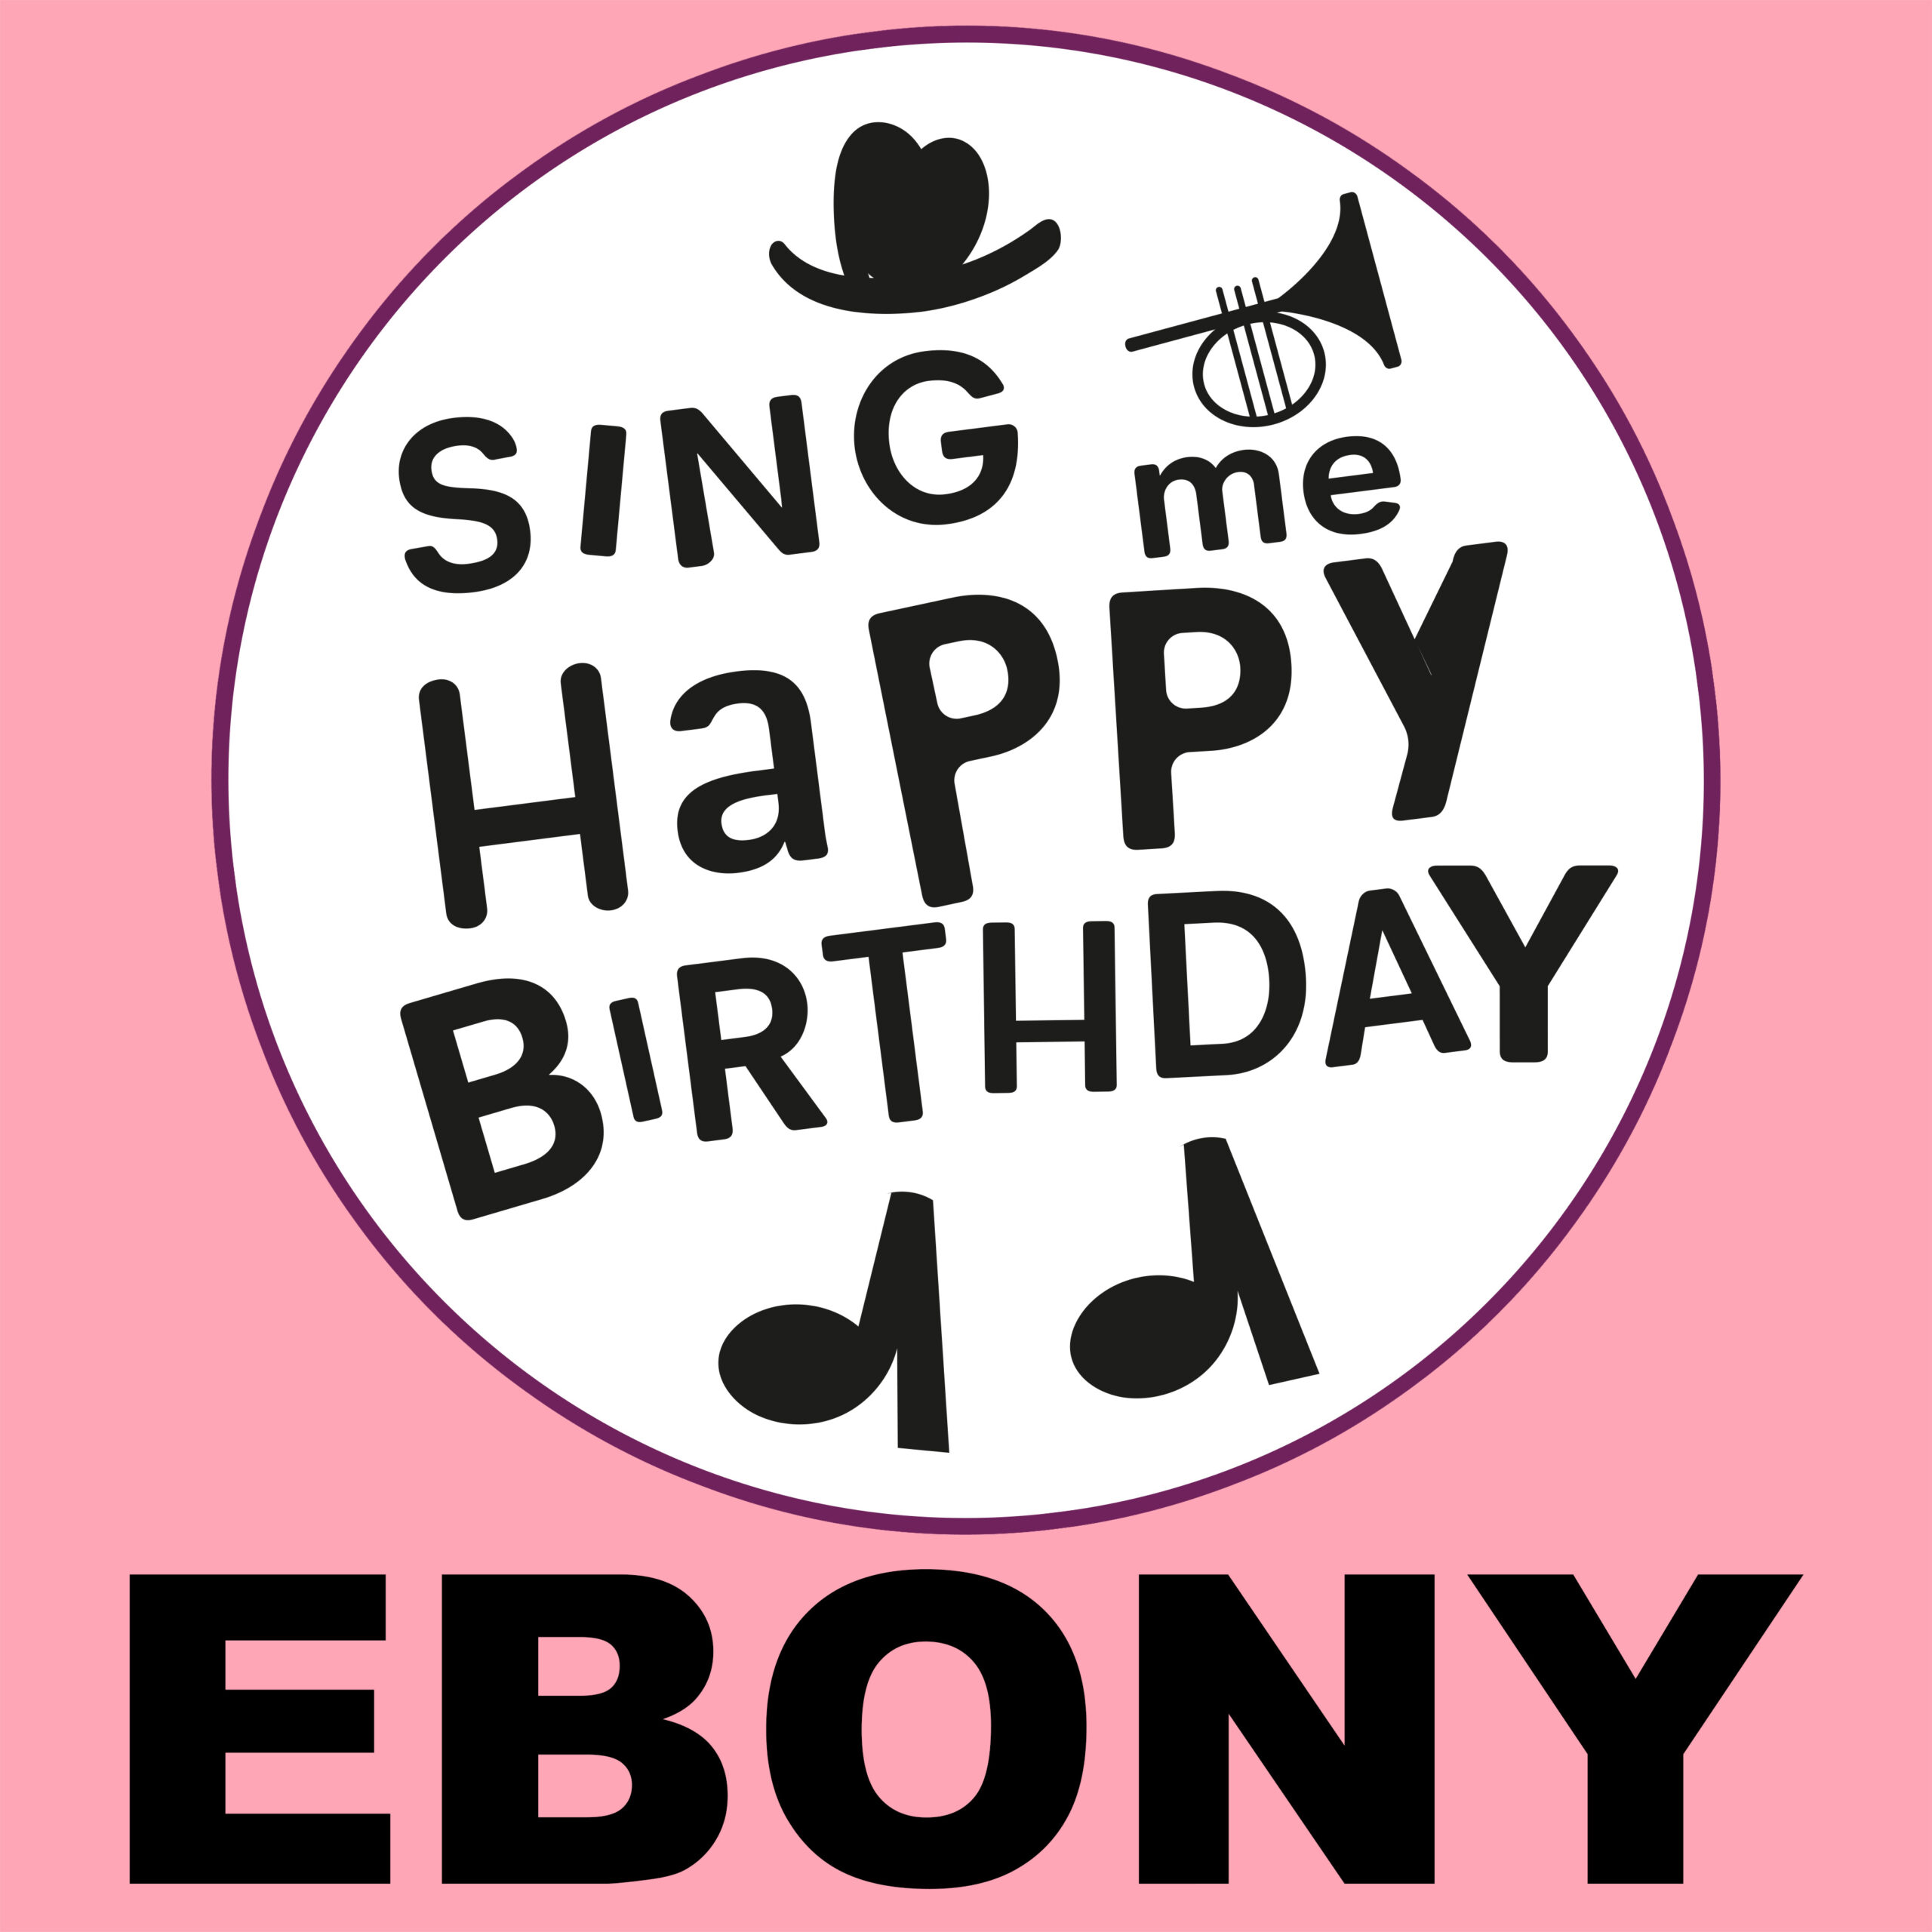 Happy birthday eboni